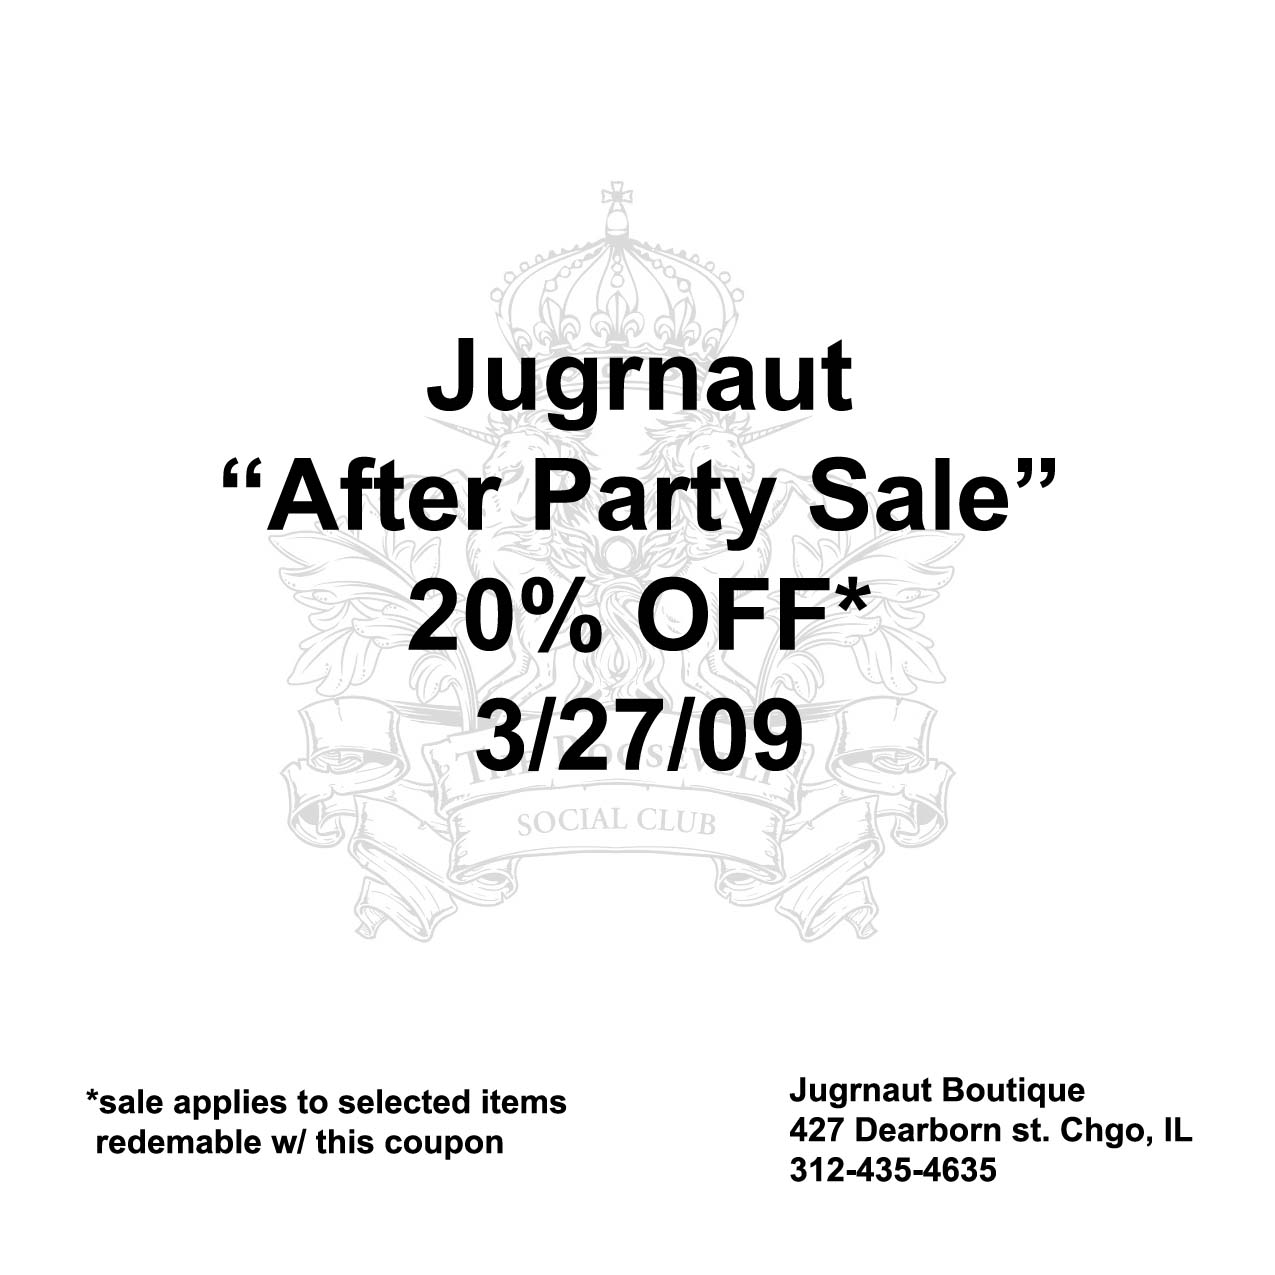 4x4-jugrnaut-coupon-copy2